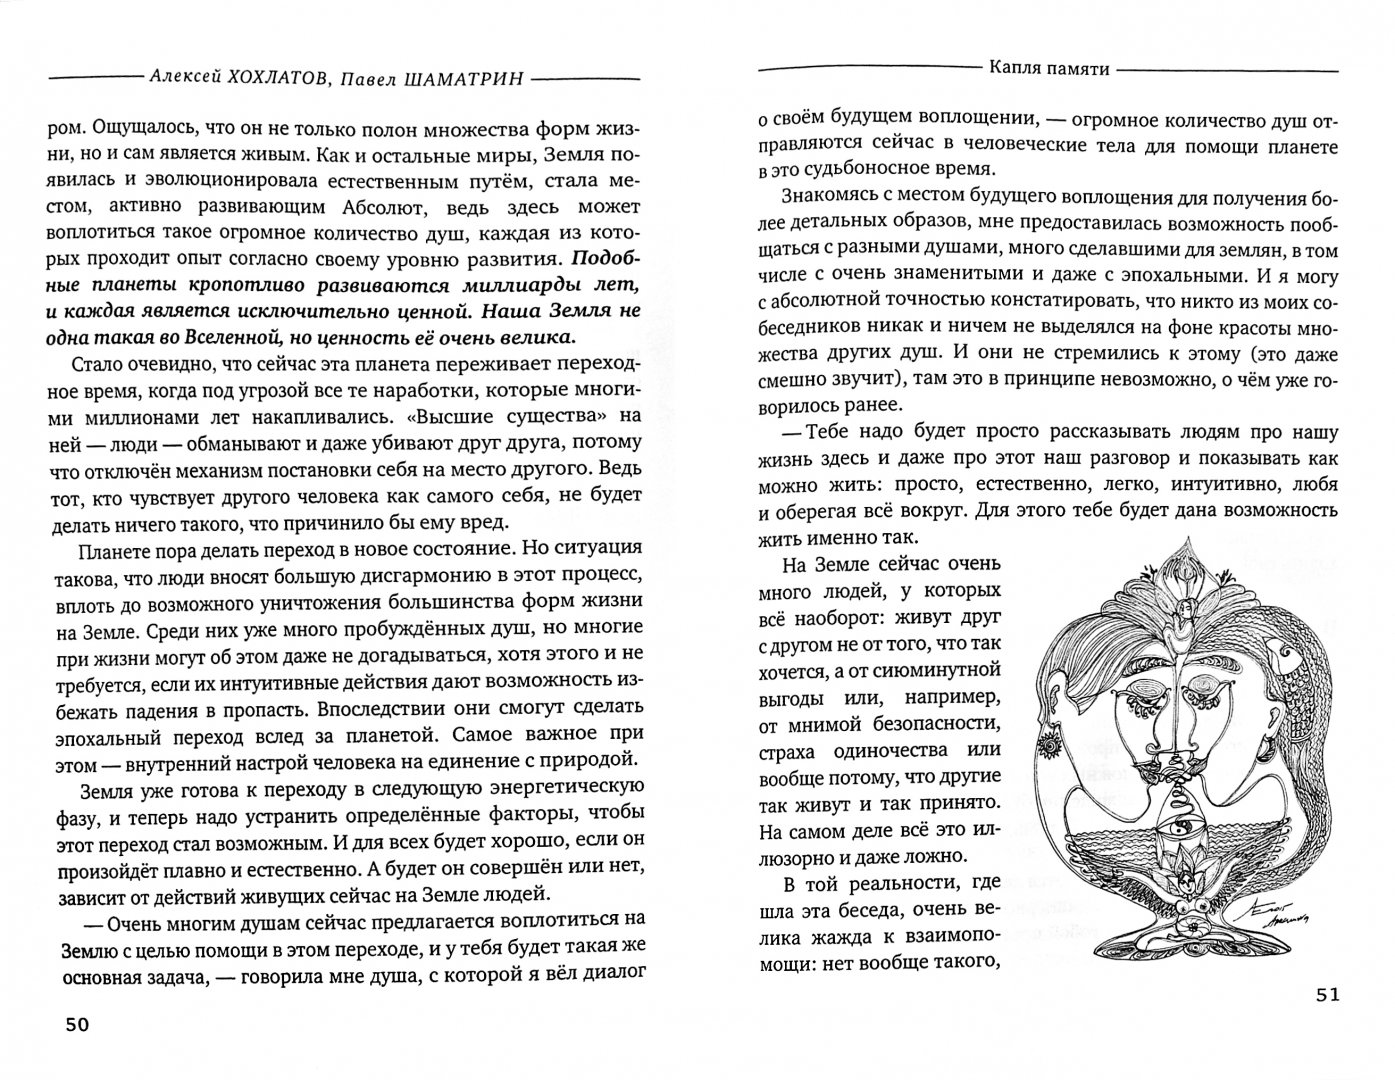 Иллюстрация 1 из 6 для Капля памяти - Хохлатов, Шаматрин | Лабиринт - книги. Источник: Лабиринт